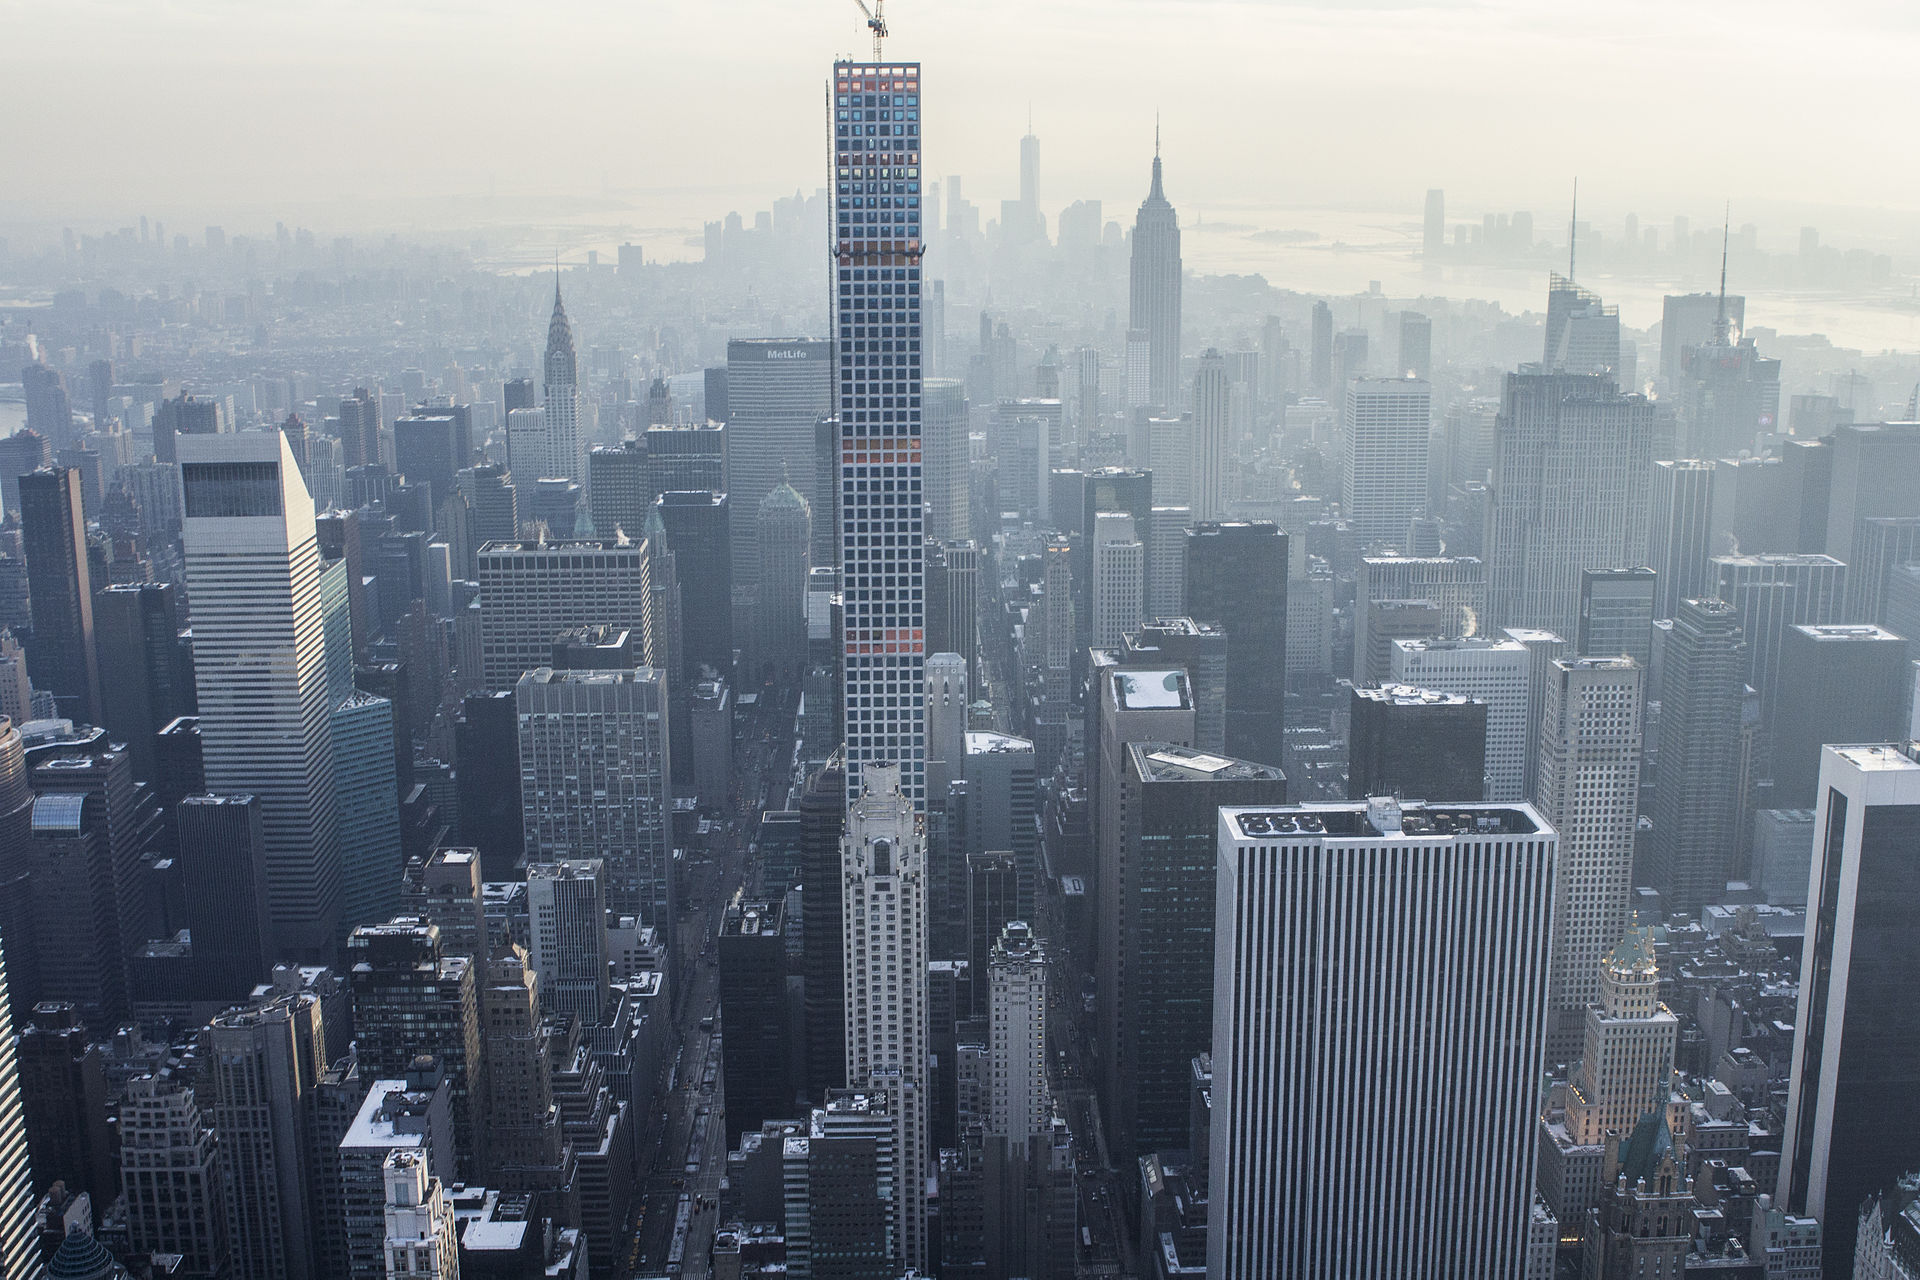 Na świecie jest już 100 super wysokich wieżowców